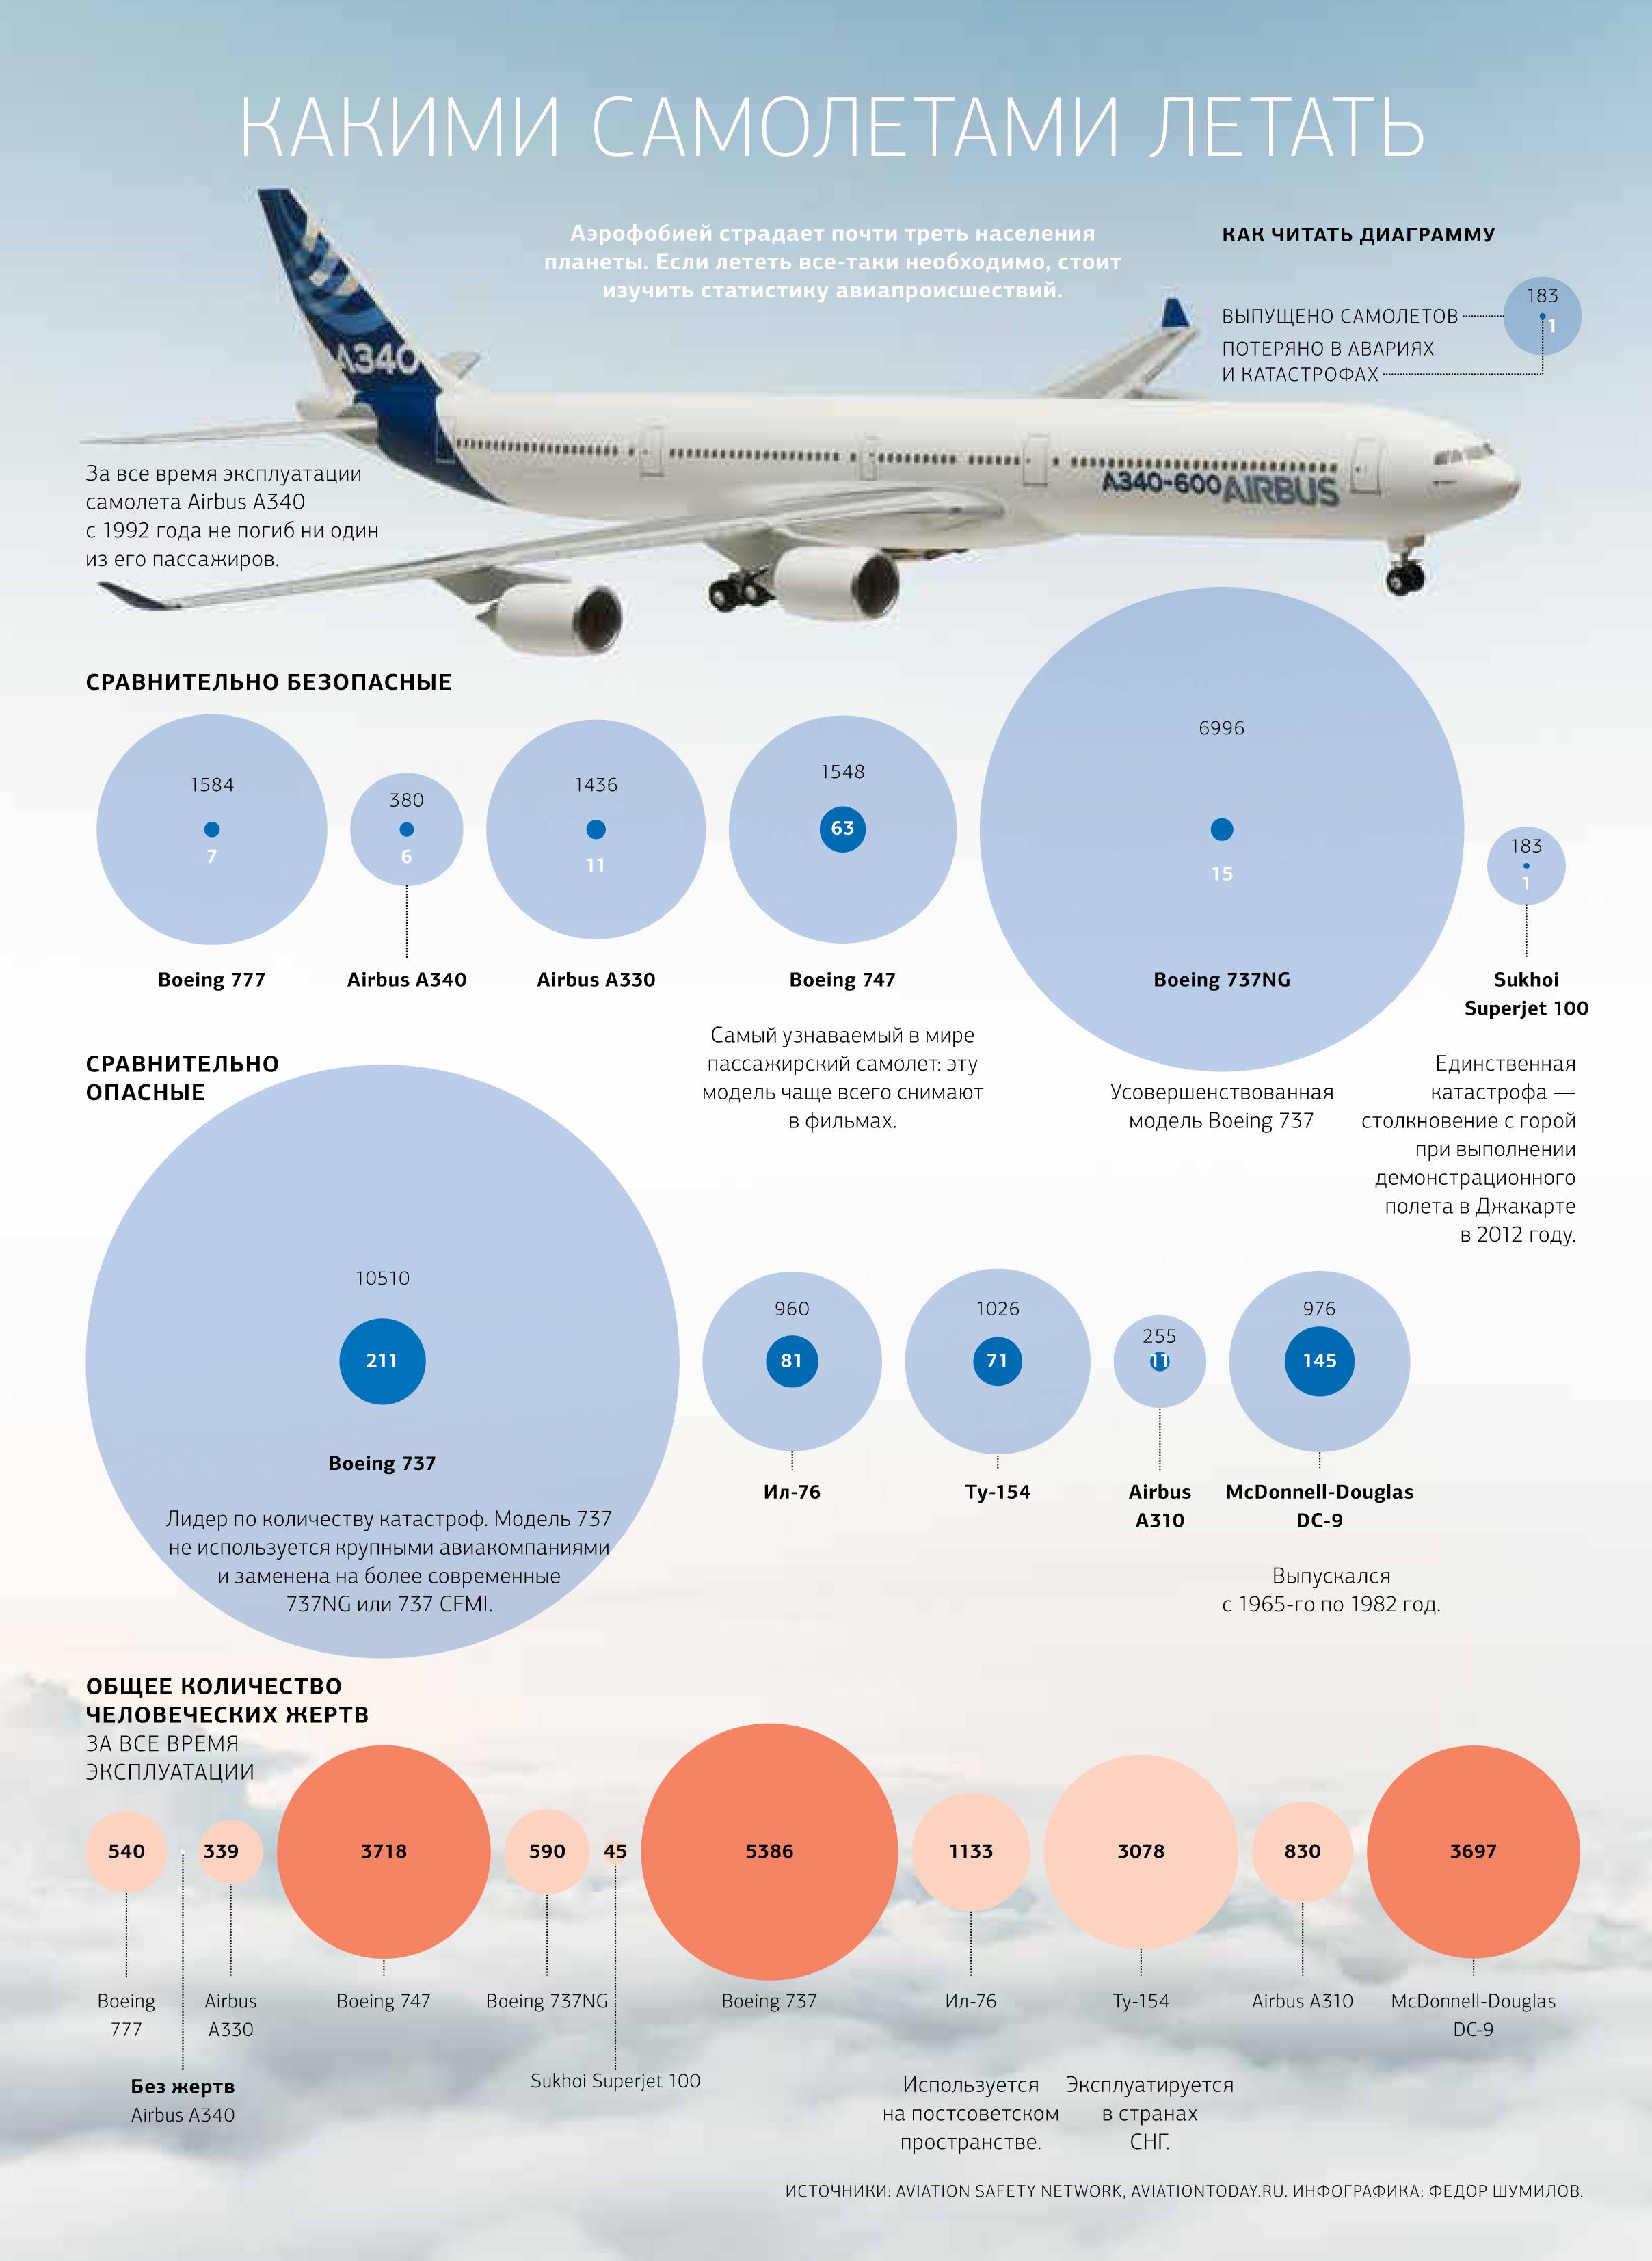 Топ самых безопасных авиакомпаний на 2021 год. рейтинг составлен как с мировыми так и российскими перевозчиками